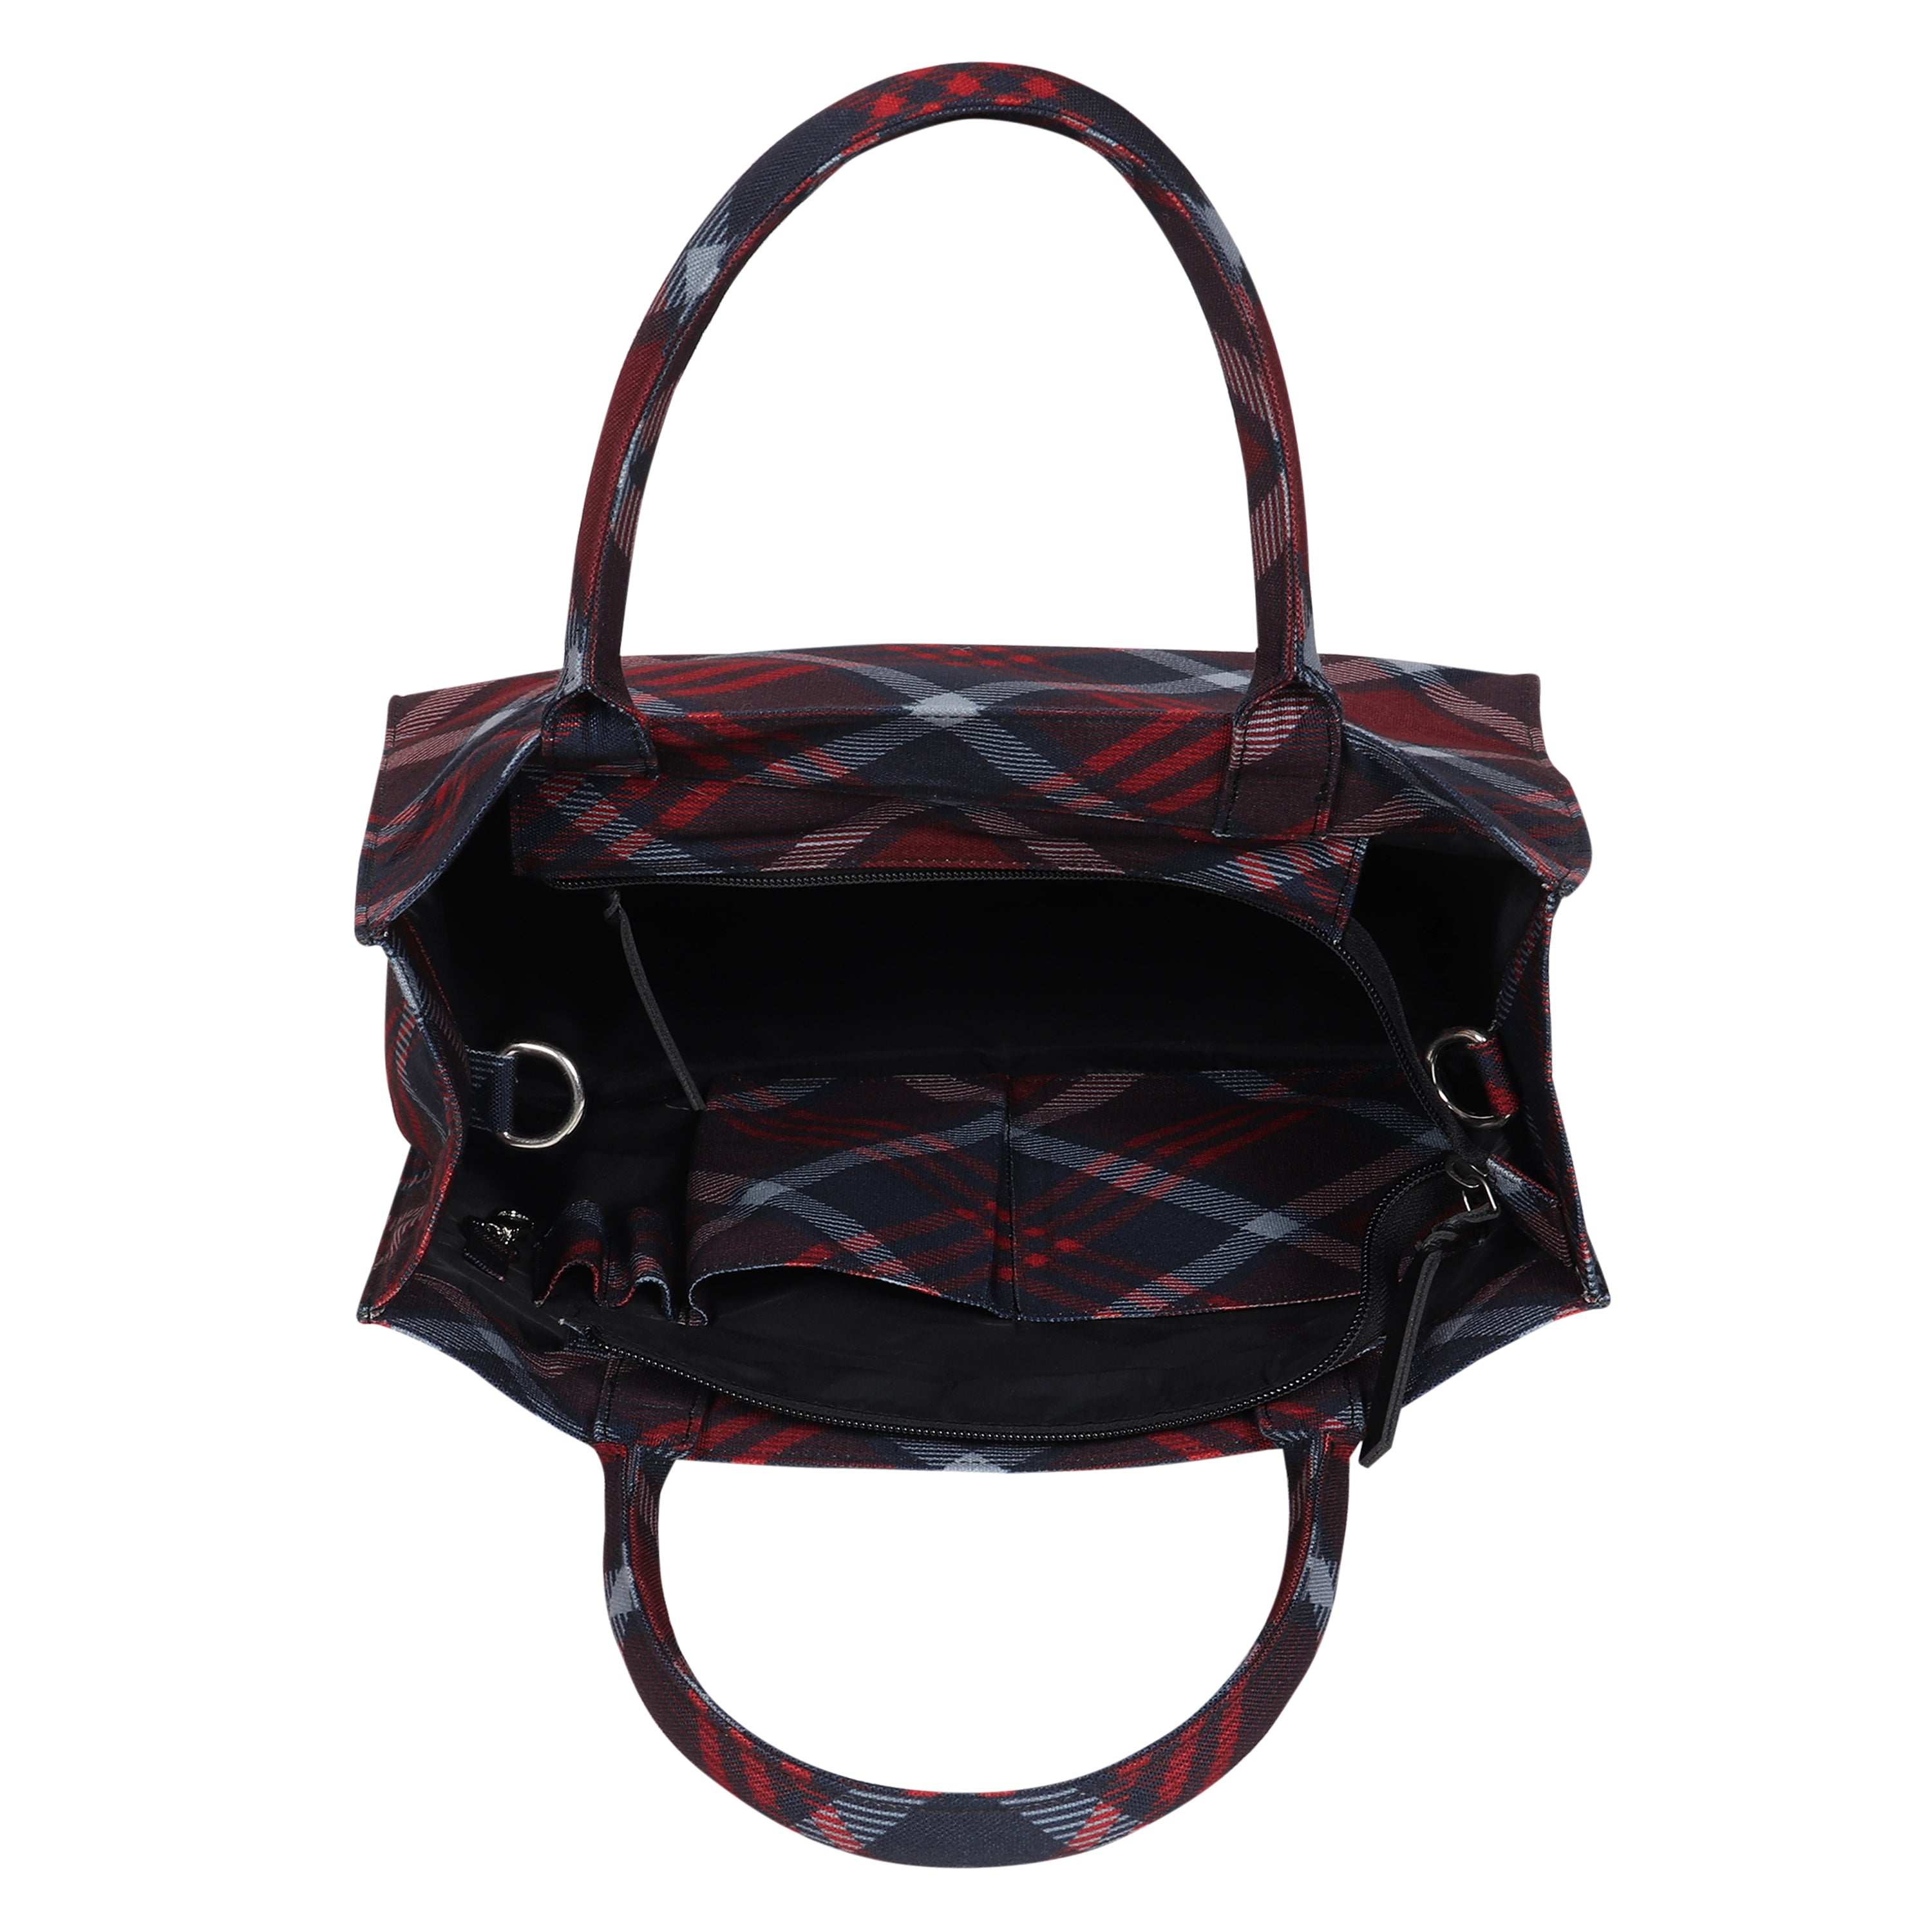 Stag Maroon Tartan Handbag - Medium